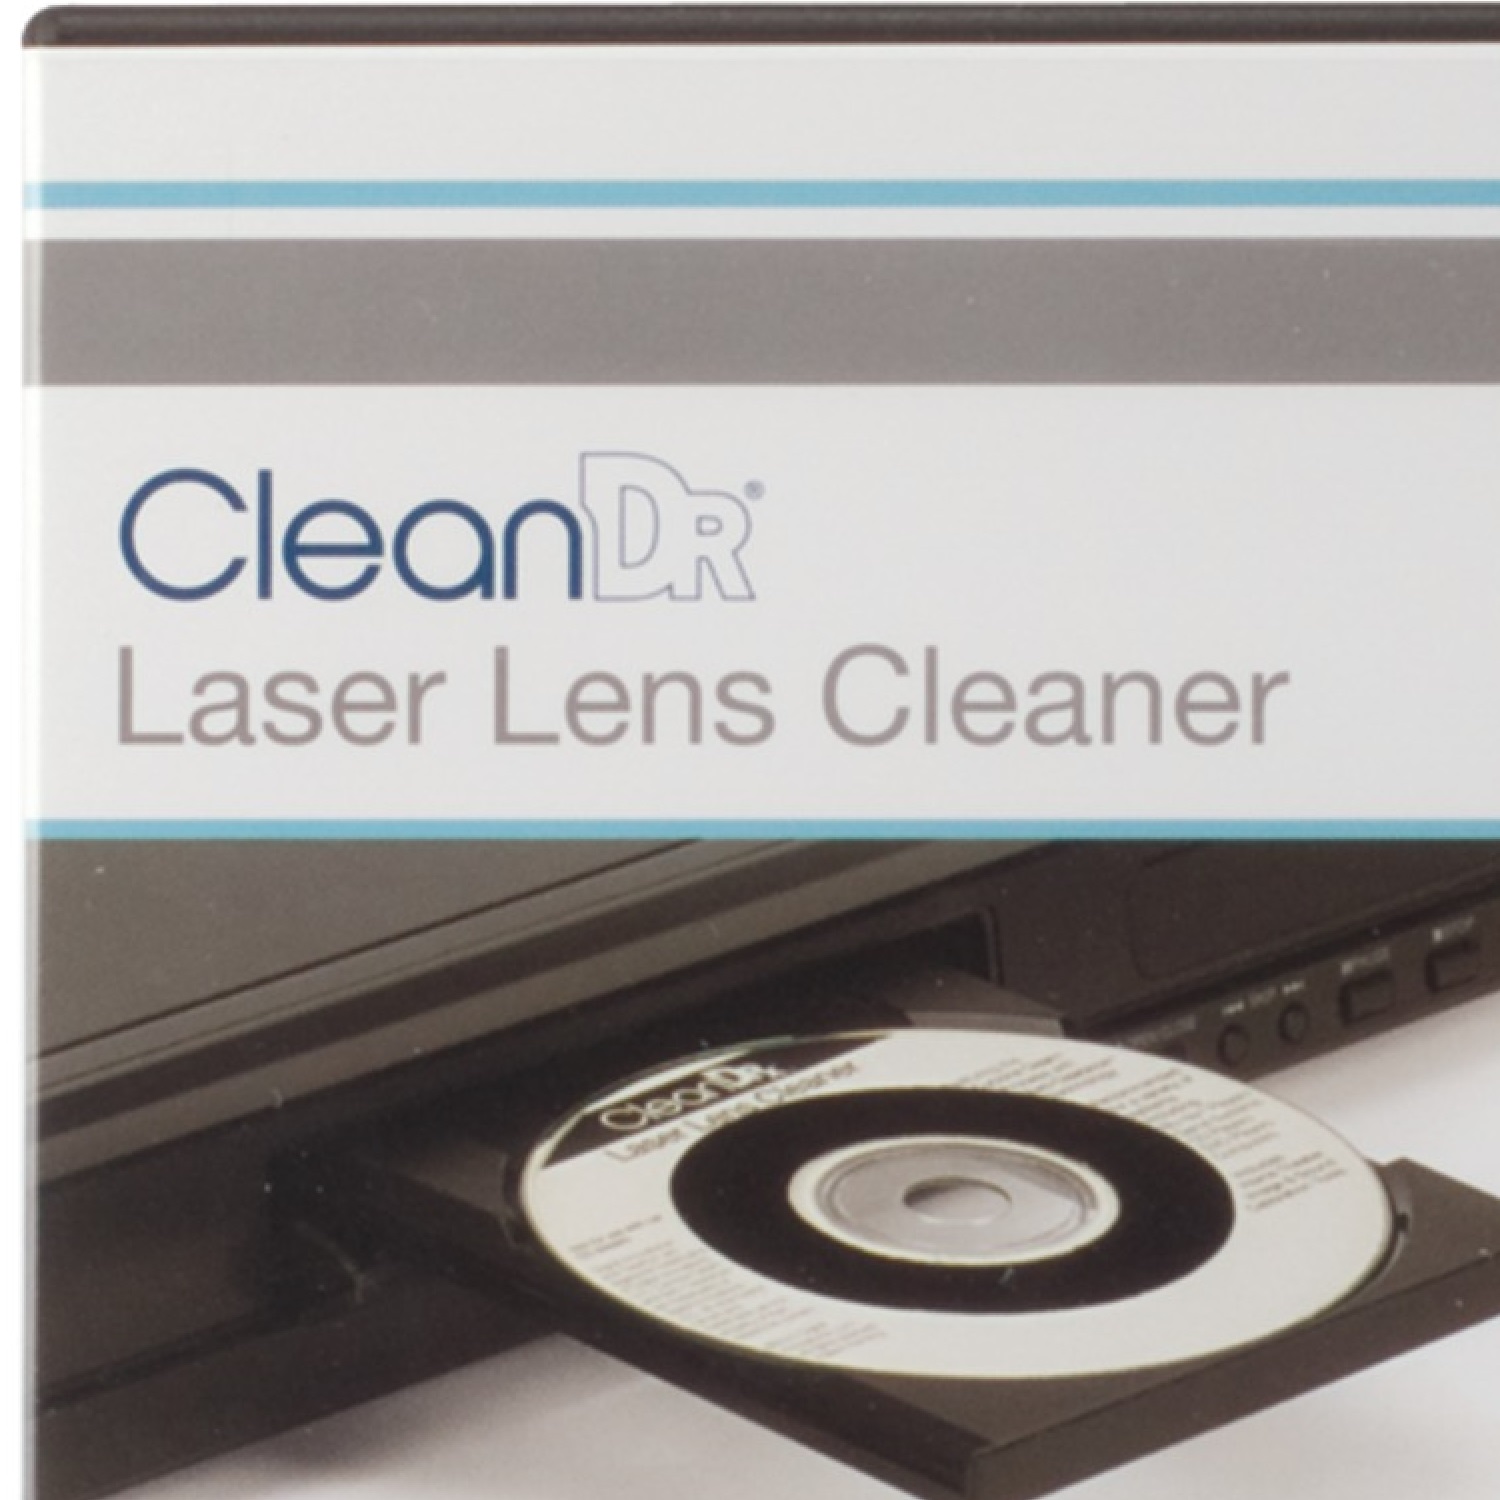 Digital Innovations 6012000 CleanDr Laser Lens Cleaner - image 3 of 3